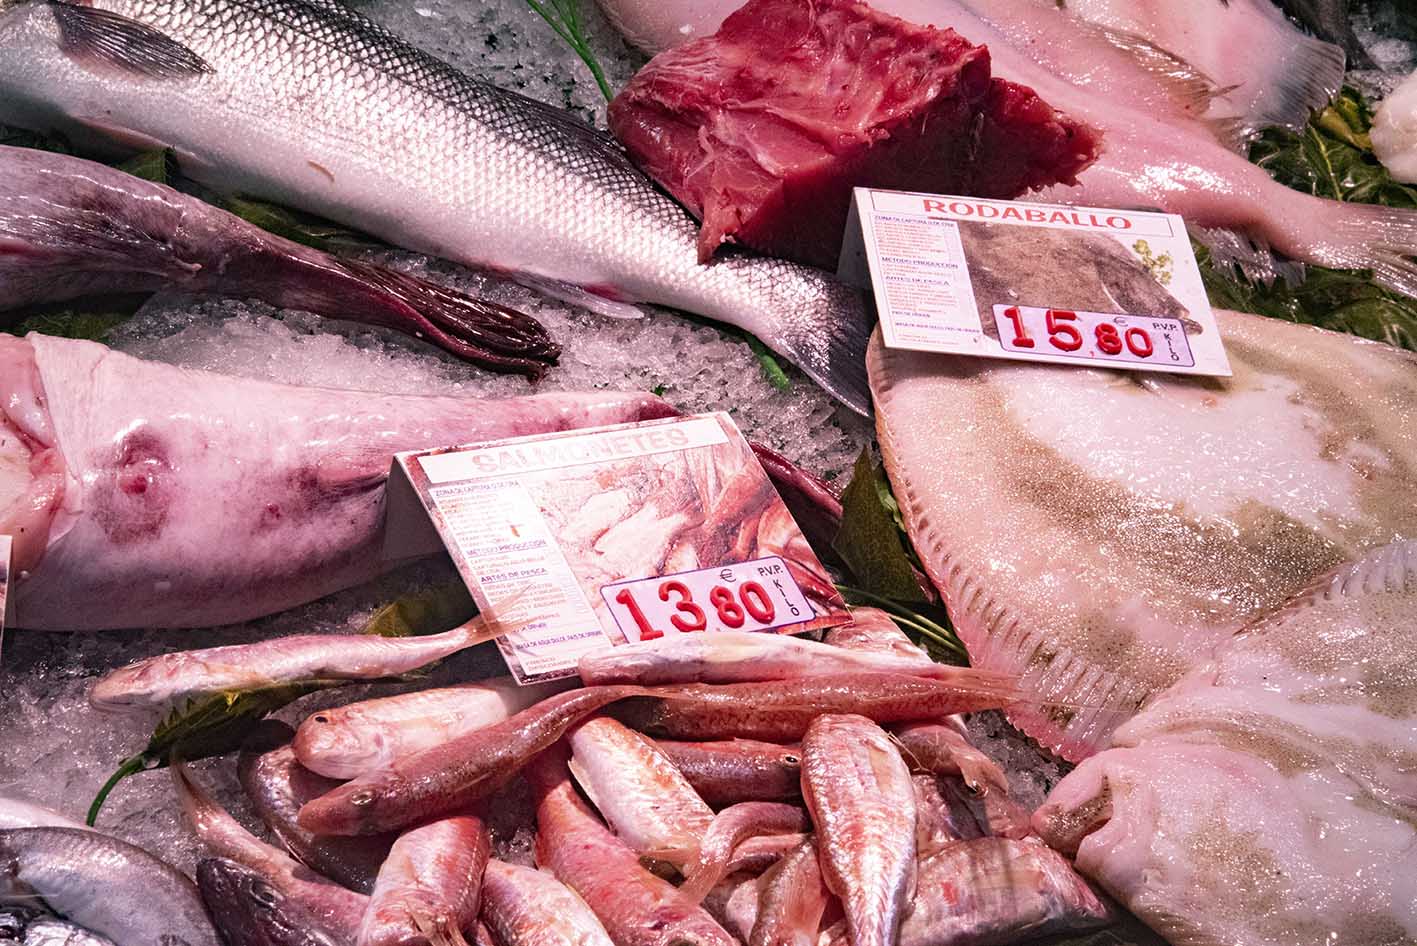 Precios de una pescadería en Toledo, inflacion, precios, comercio, tienda, mercado,